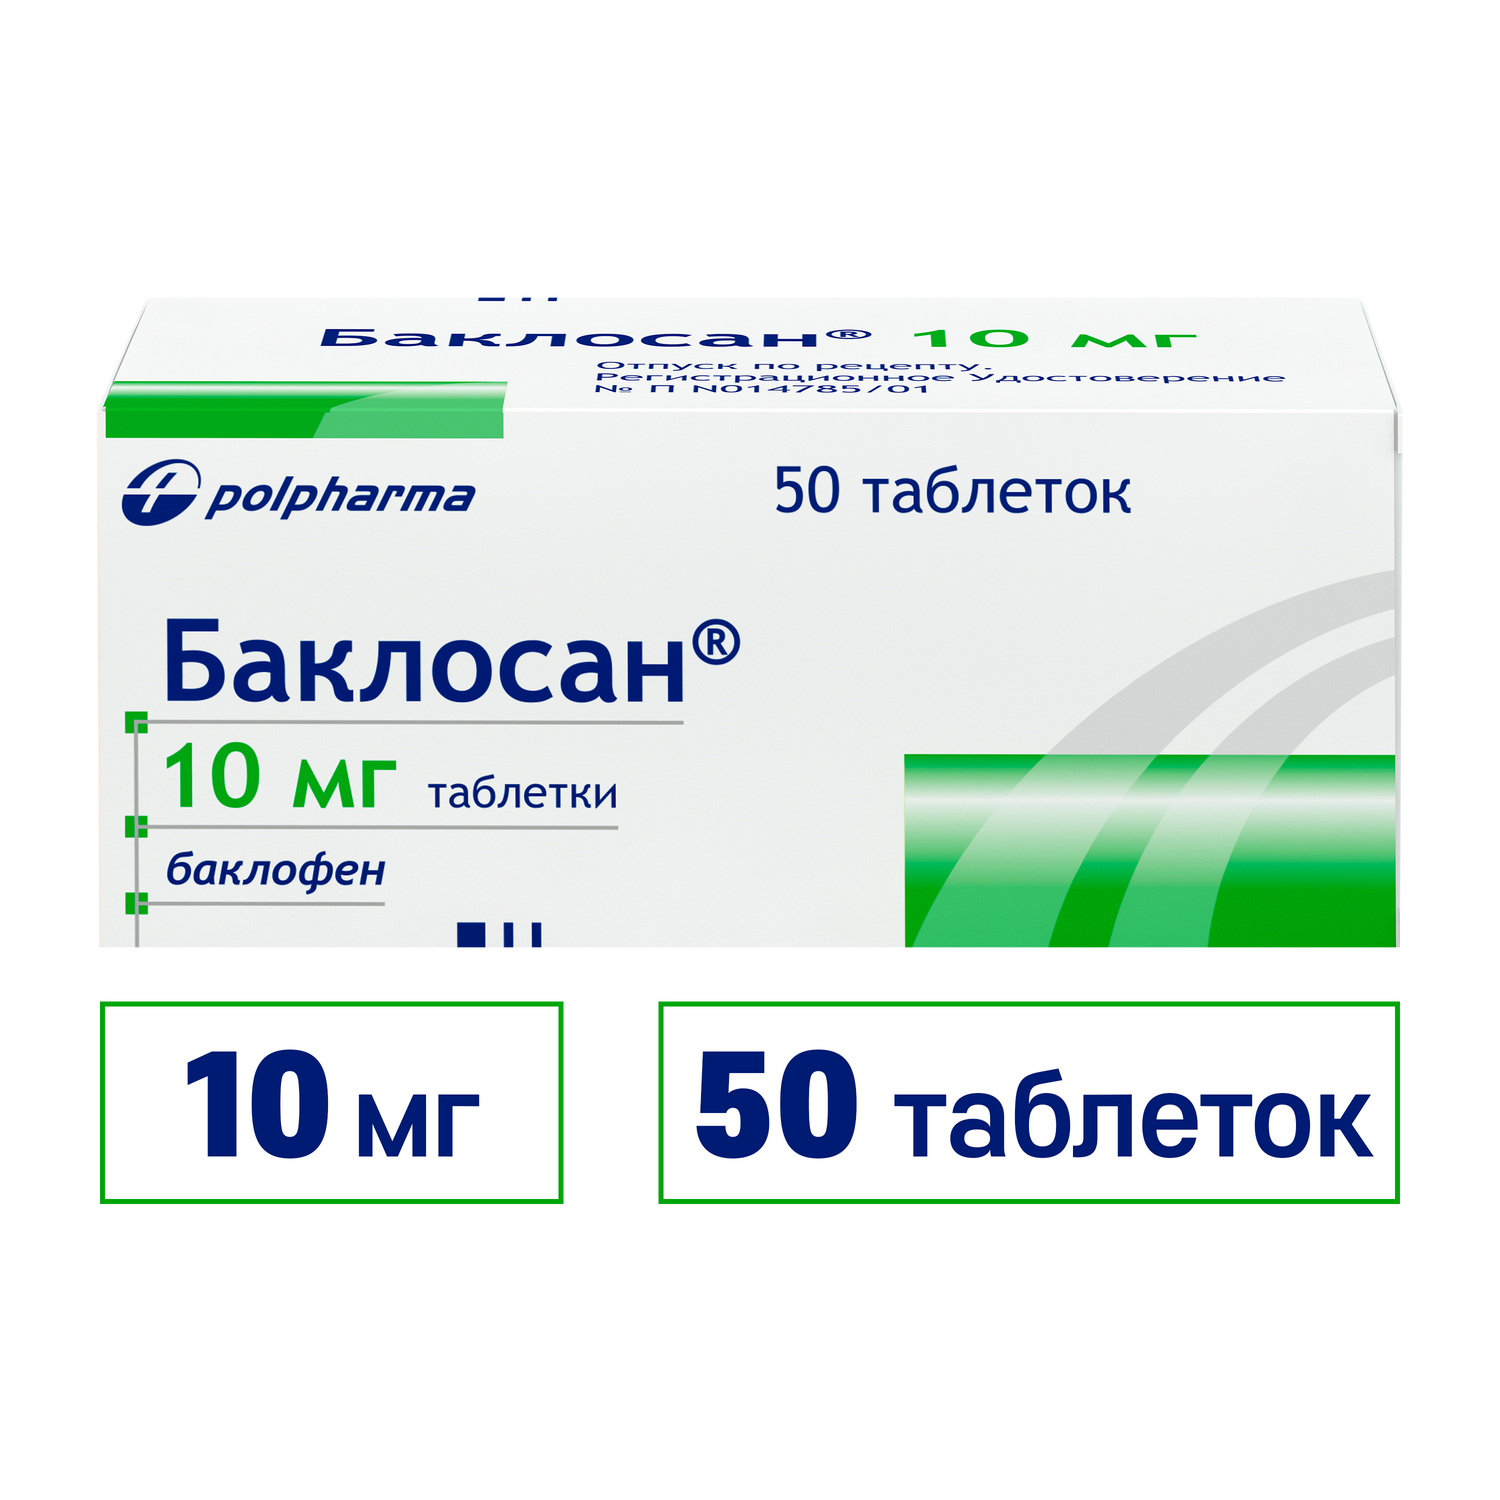 Баклосан® Таблетки 10 мг 50 шт купить по цене 281,0 руб в интернет-аптеке в Москве – лекарства в наличии, стоимость Баклосан, доставка на дом